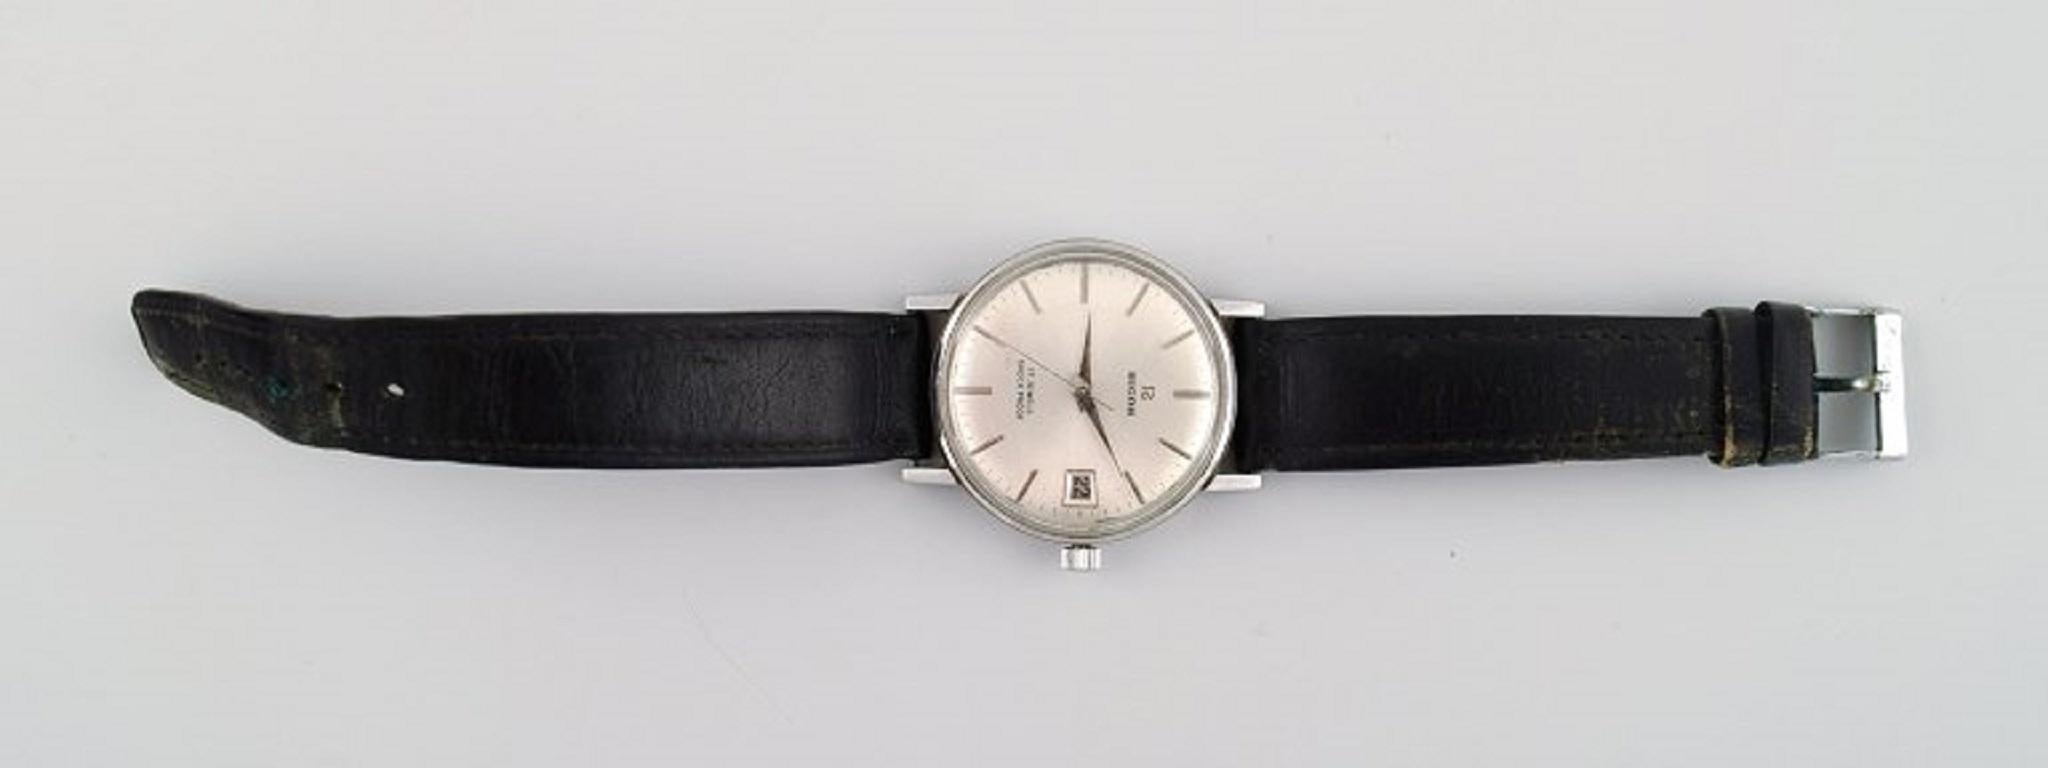 Montre-bracelet vintage Ricoh 17 Jewels. Japon, années 1960/70.
Diamètre de l'horloge : 36 mm.
En parfait état.
Estampillé.
Toutes les montres sont soigneusement révisées par notre horloger professionnel.